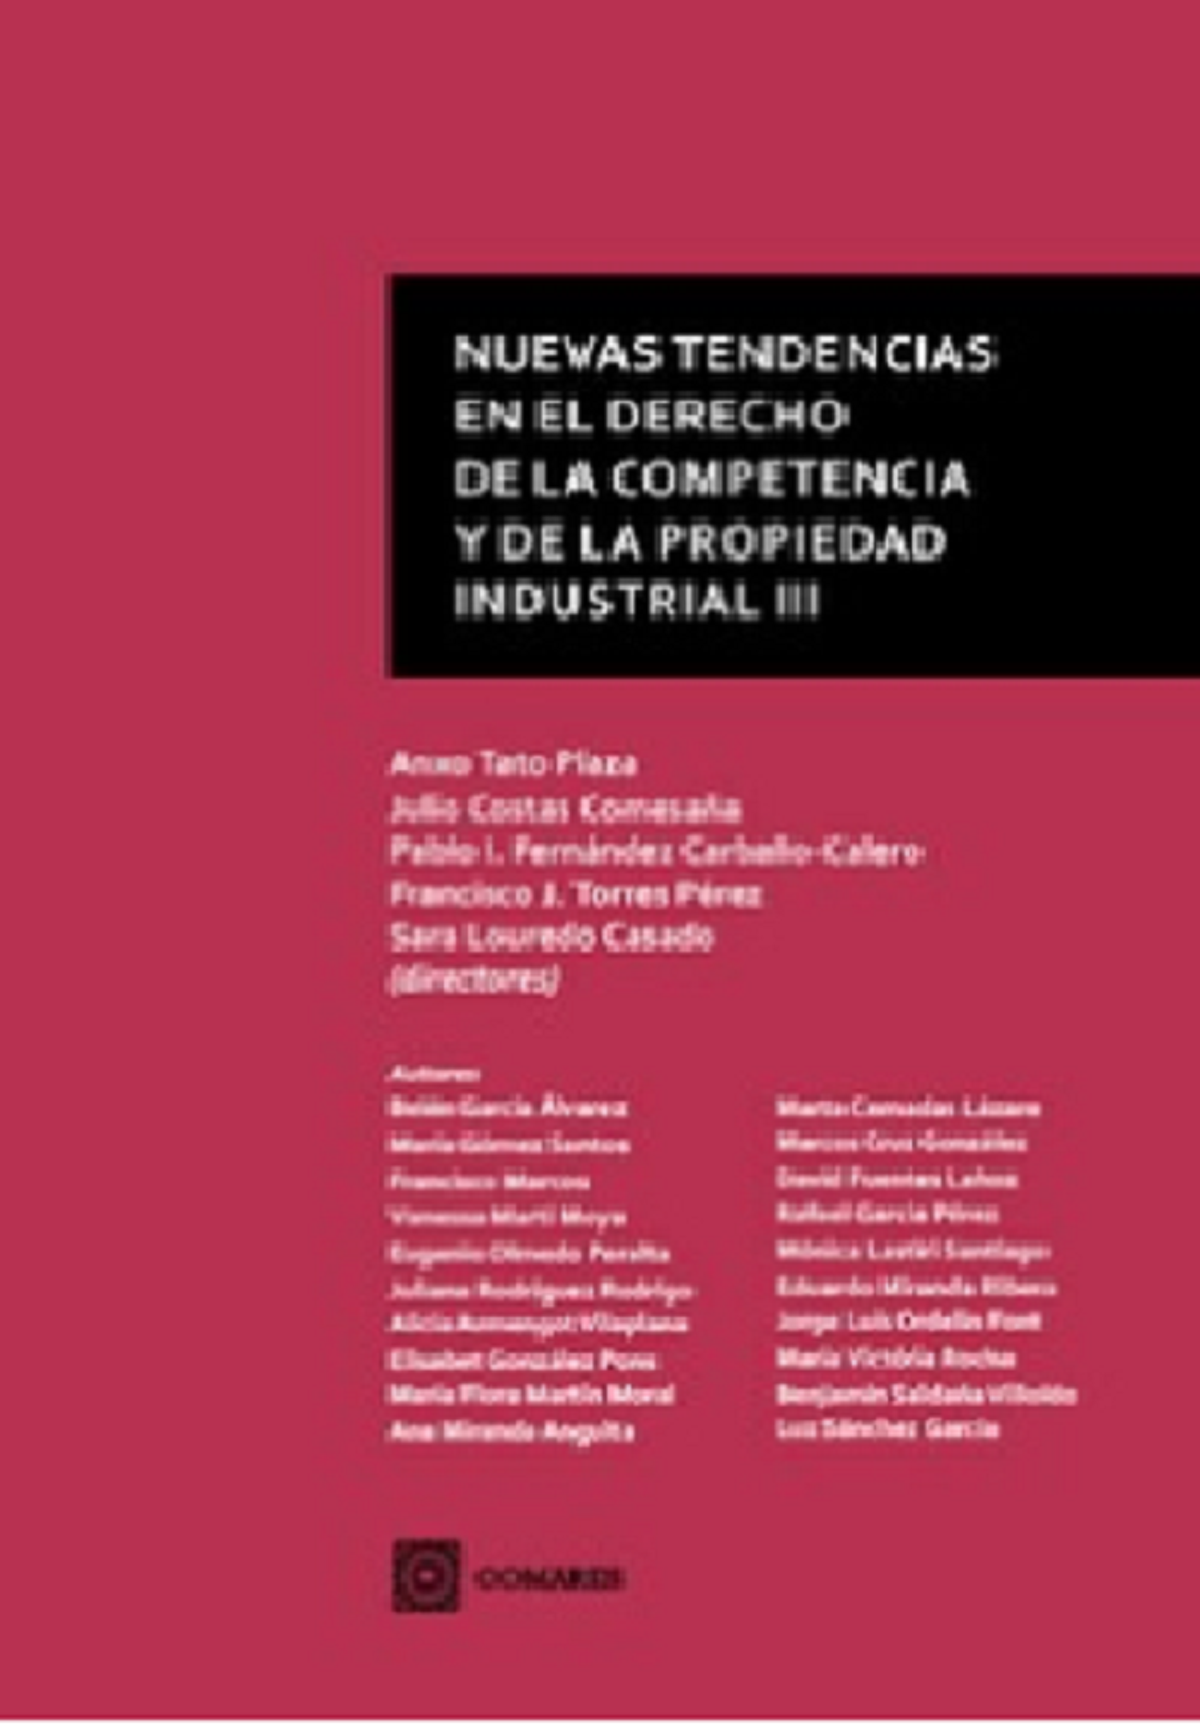 Imagen de portada del libro Nuevas tendencias en el derecho de la competencia y de la propiedad industrial III